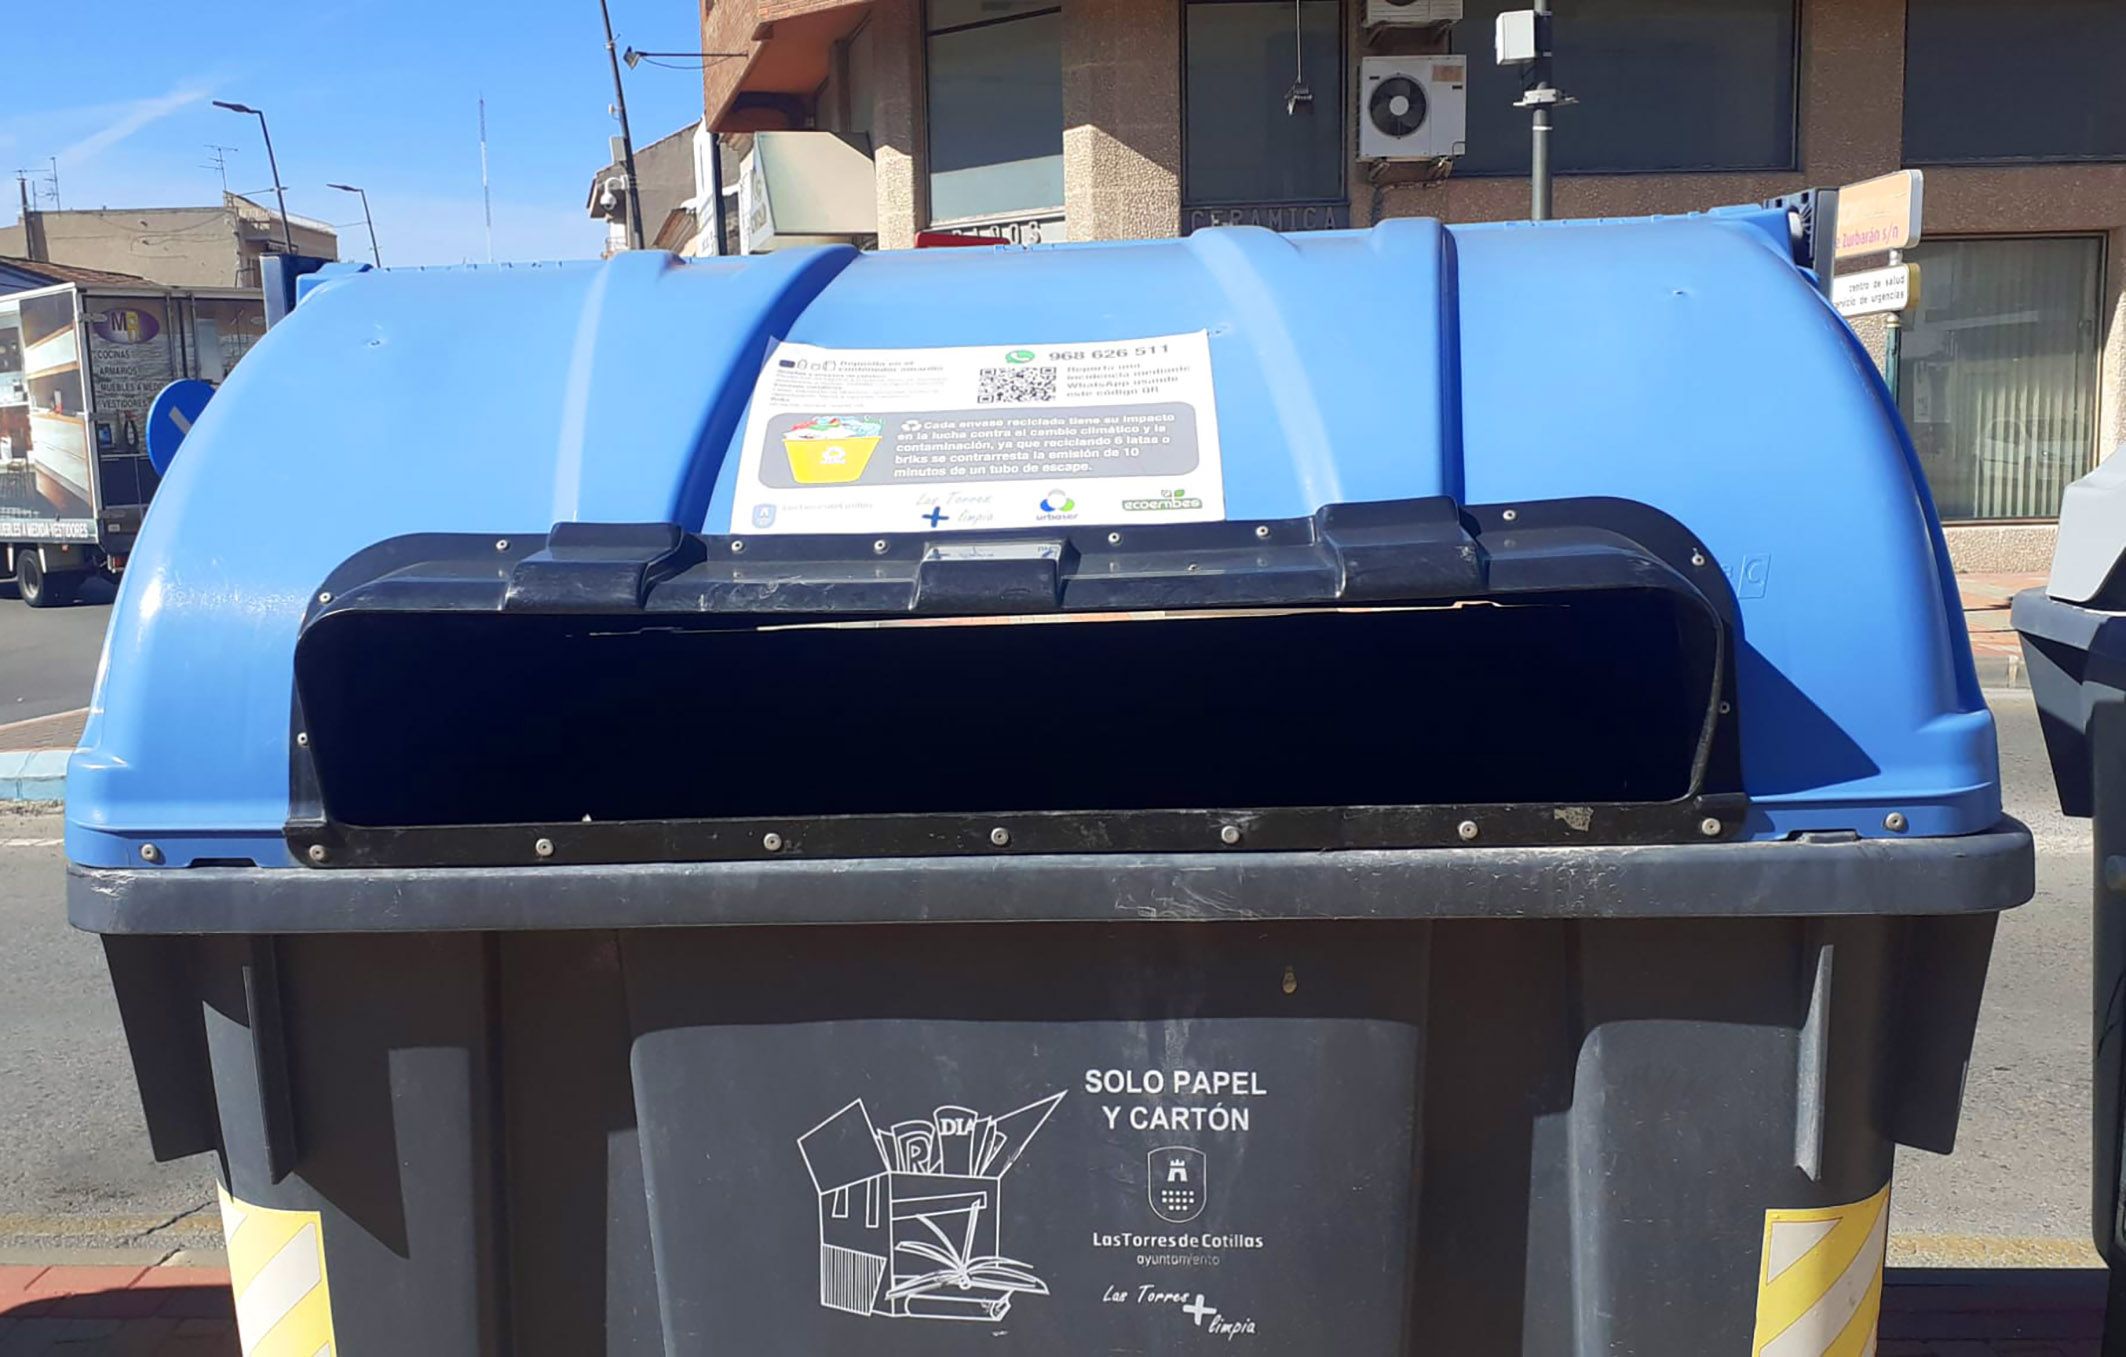 Vinilos informativos en los contenedores de Las Torres de Cotillas para facilitar el reciclaje4